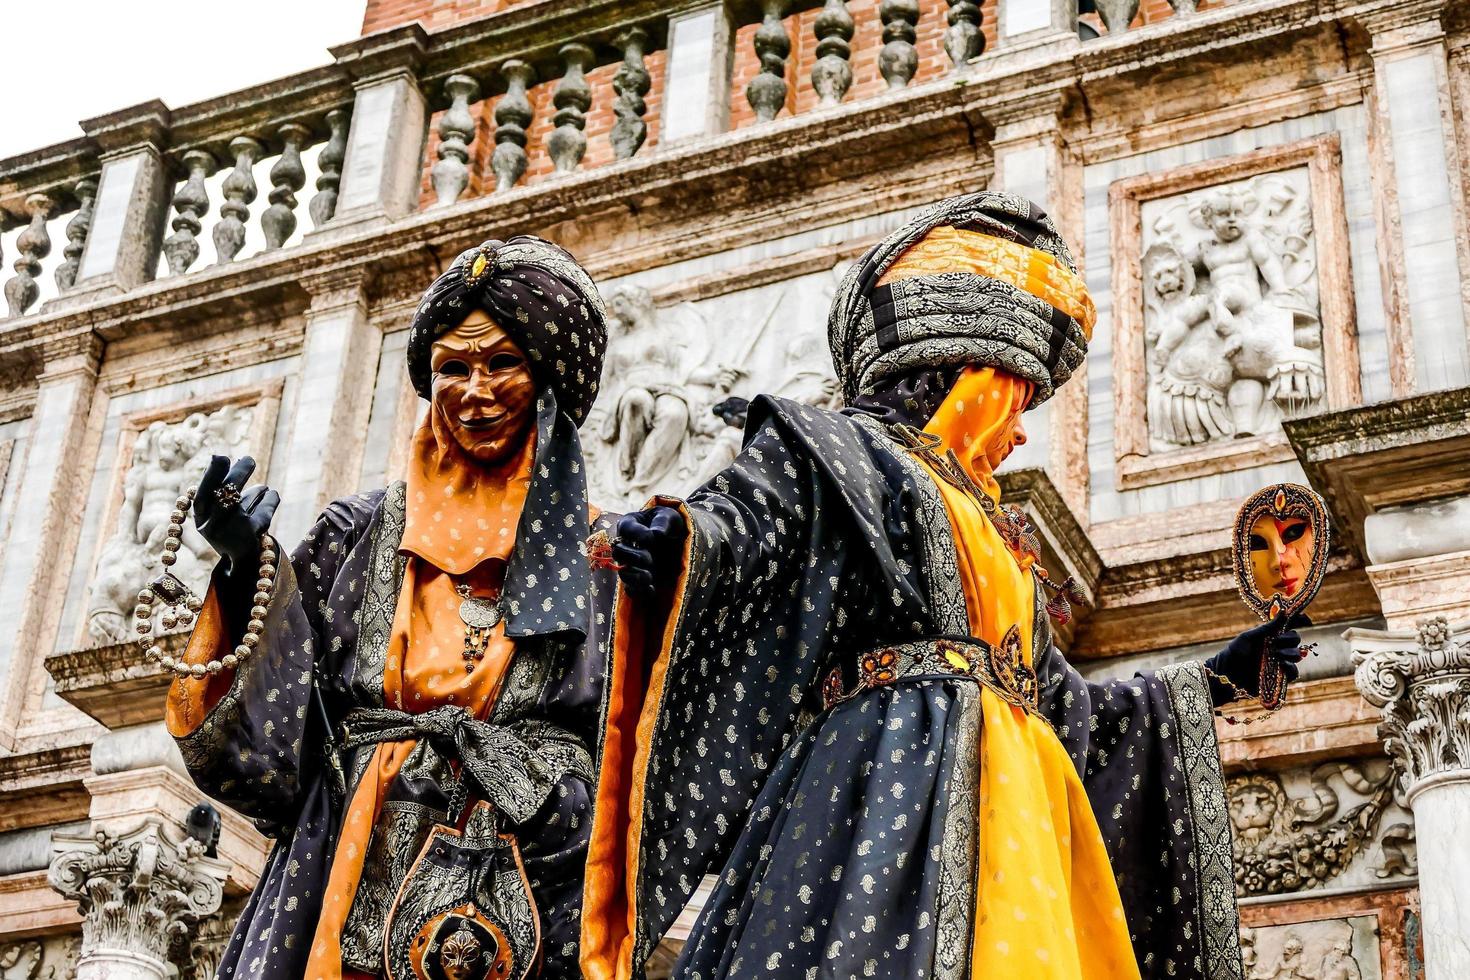 pessoas não identificadas usando máscaras de carnaval no carnaval de veneza em veneza, itália, por volta de fevereiro de 2022 foto